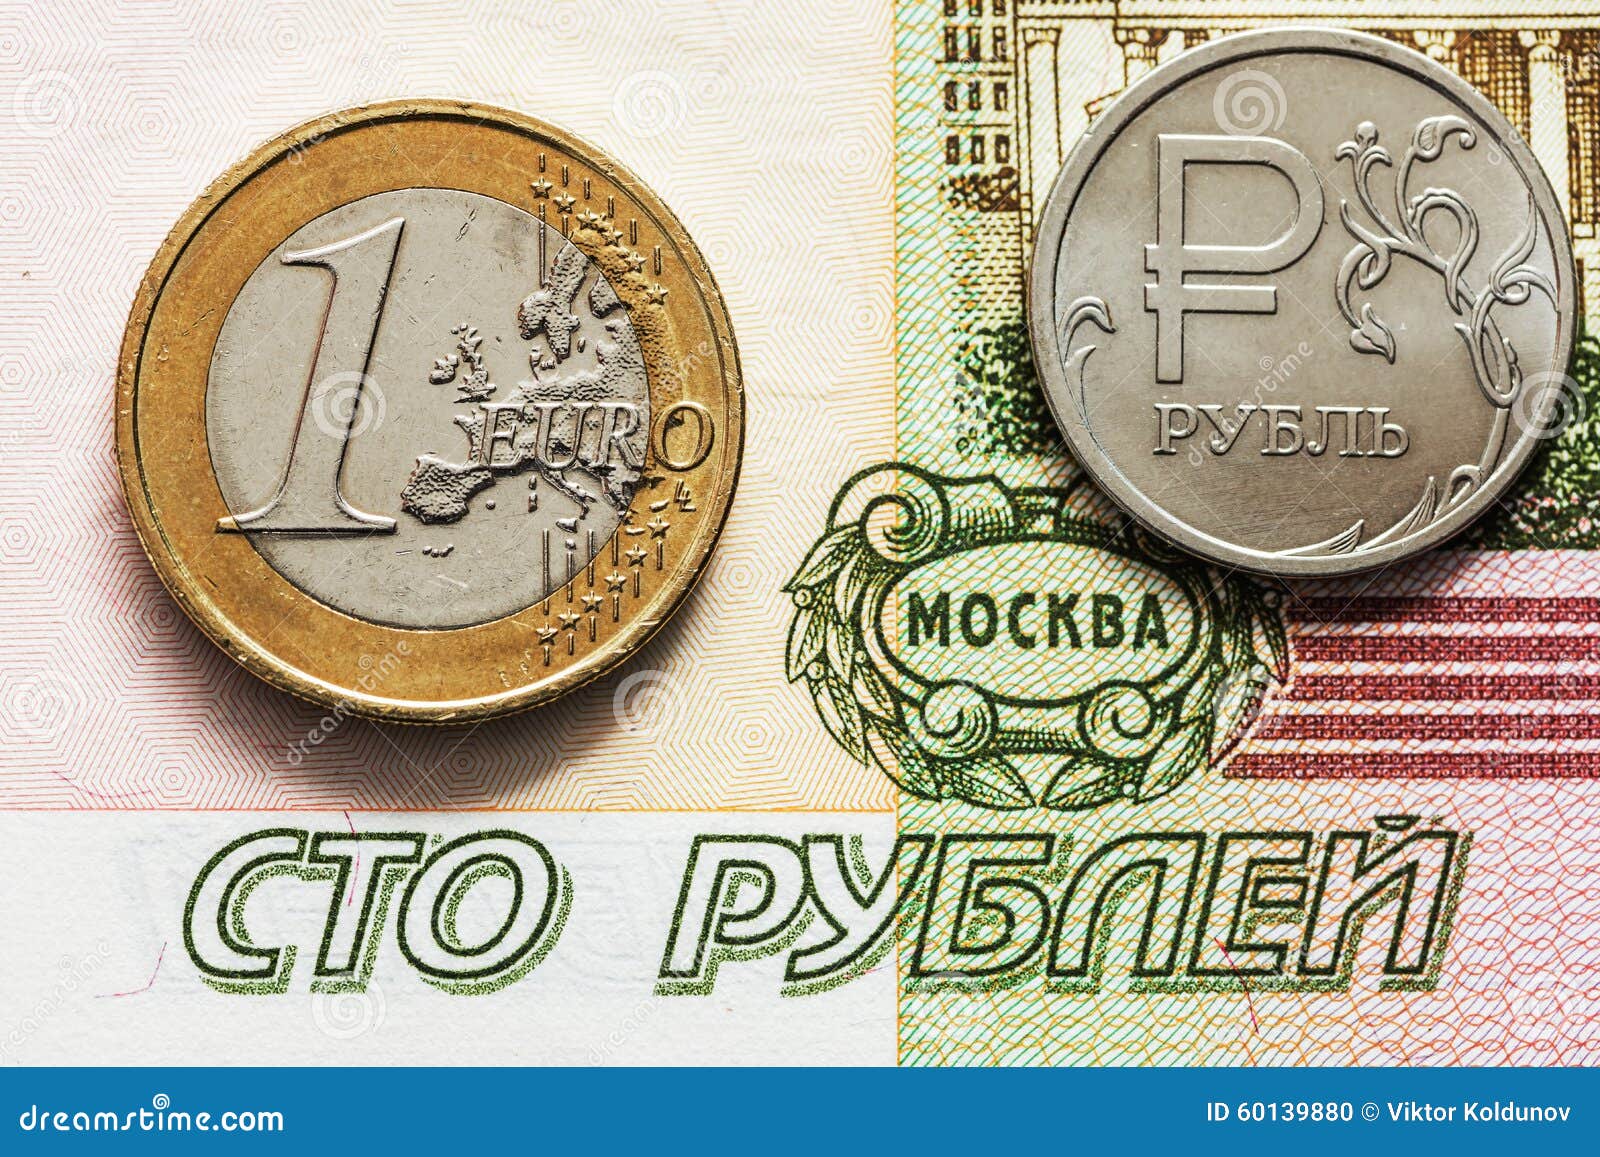 600000 евро в рублях. 1 Евро в рублях. 100 Евро в рублях. Один евро 100 рублей. Европейская валюта в рублях.